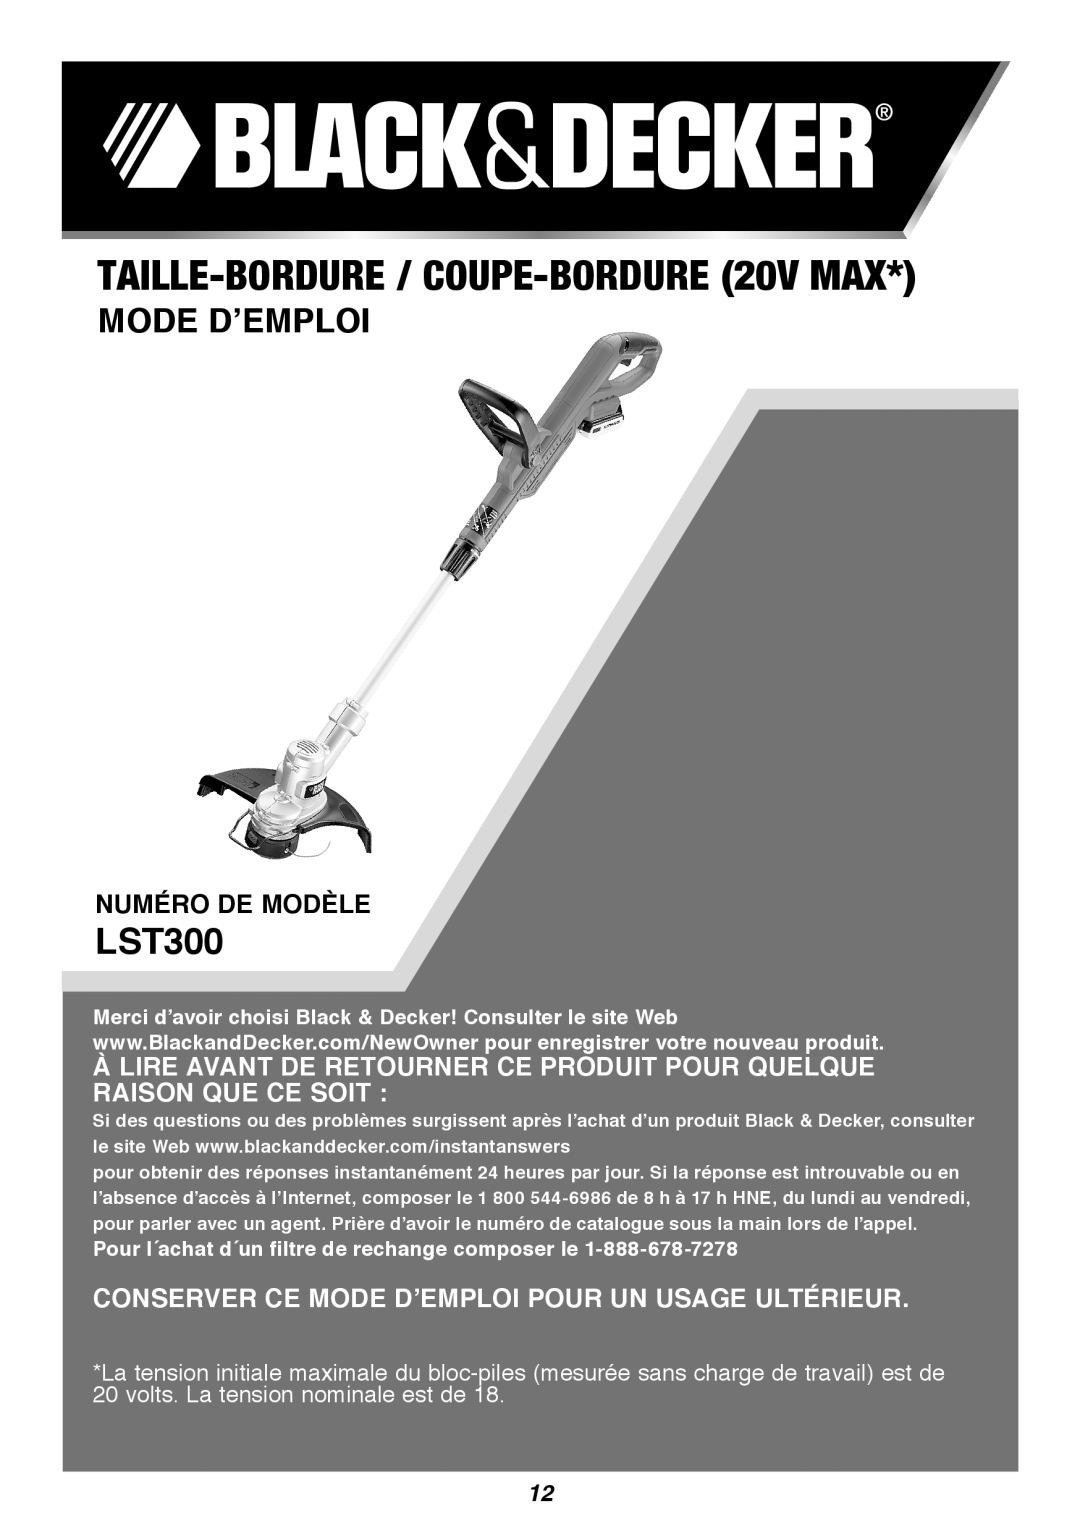 Black & Decker LST300R instruction manual TAILLE-BORDURE / COUPE-BORDURE20v Max, Mode D’Emploi, Numéro de modèle 